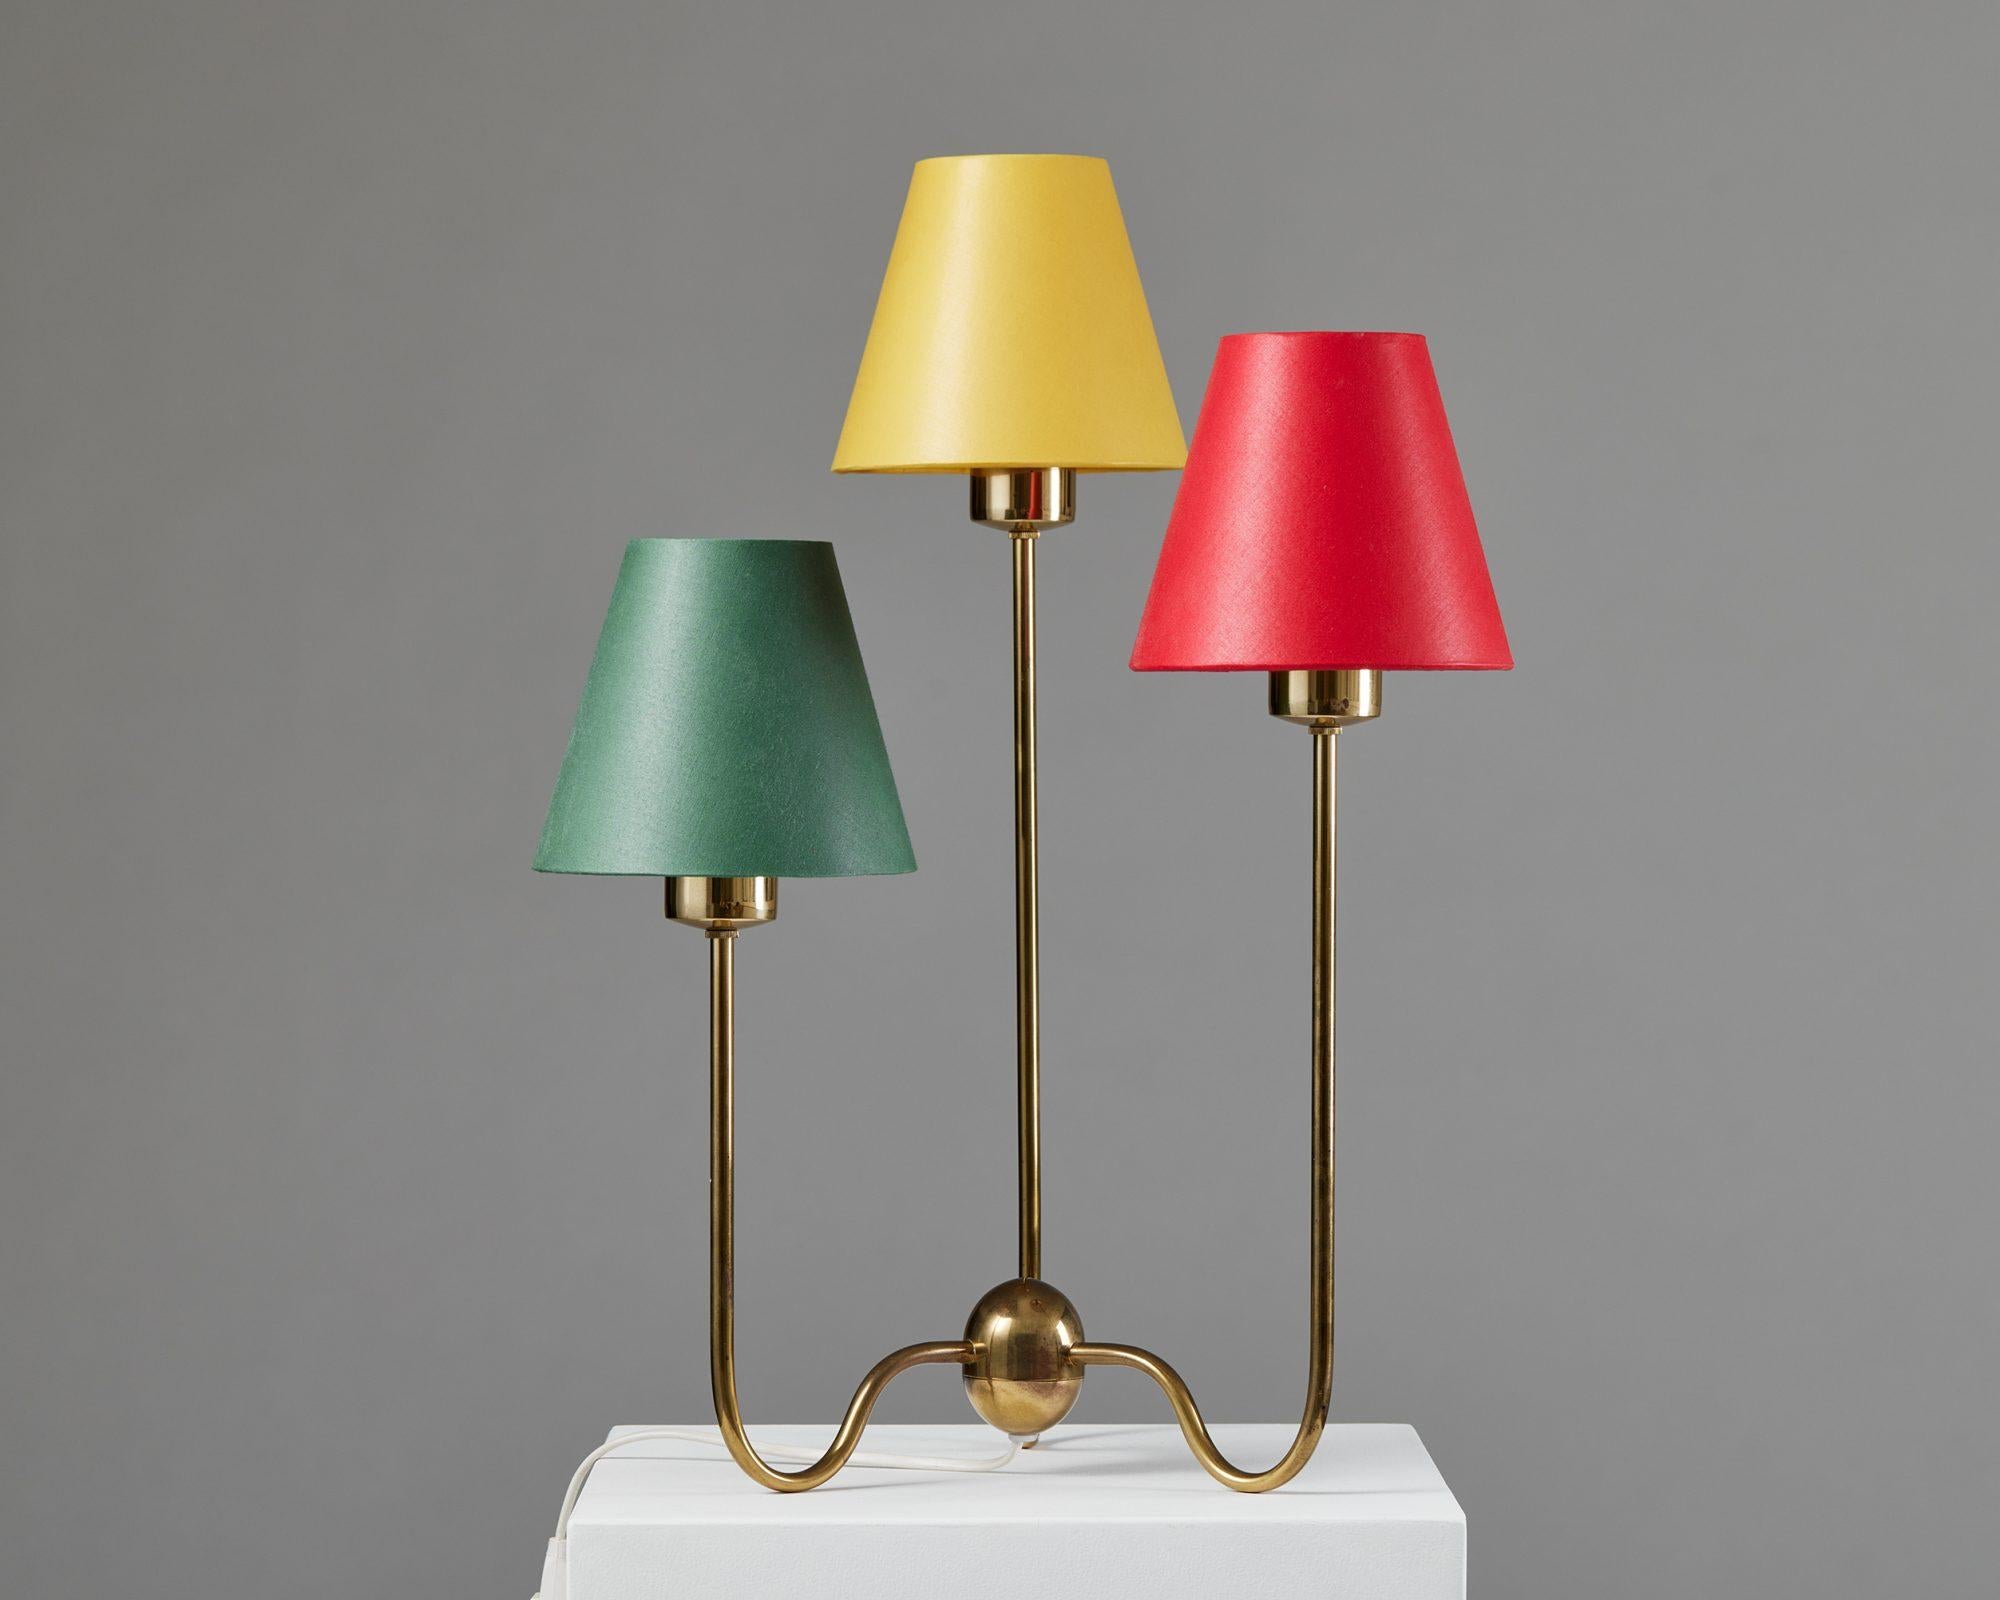 Lampe de table modèle 2468 conçue par Josef Franks pour Svenskt Tenn,
Suède, années 1950.

Laiton avec abat-jour en coton.

Estampillé.

Le modèle 2468 est une charmante lampe de table en laiton avec trois petits abat-jour en vert, jaune et